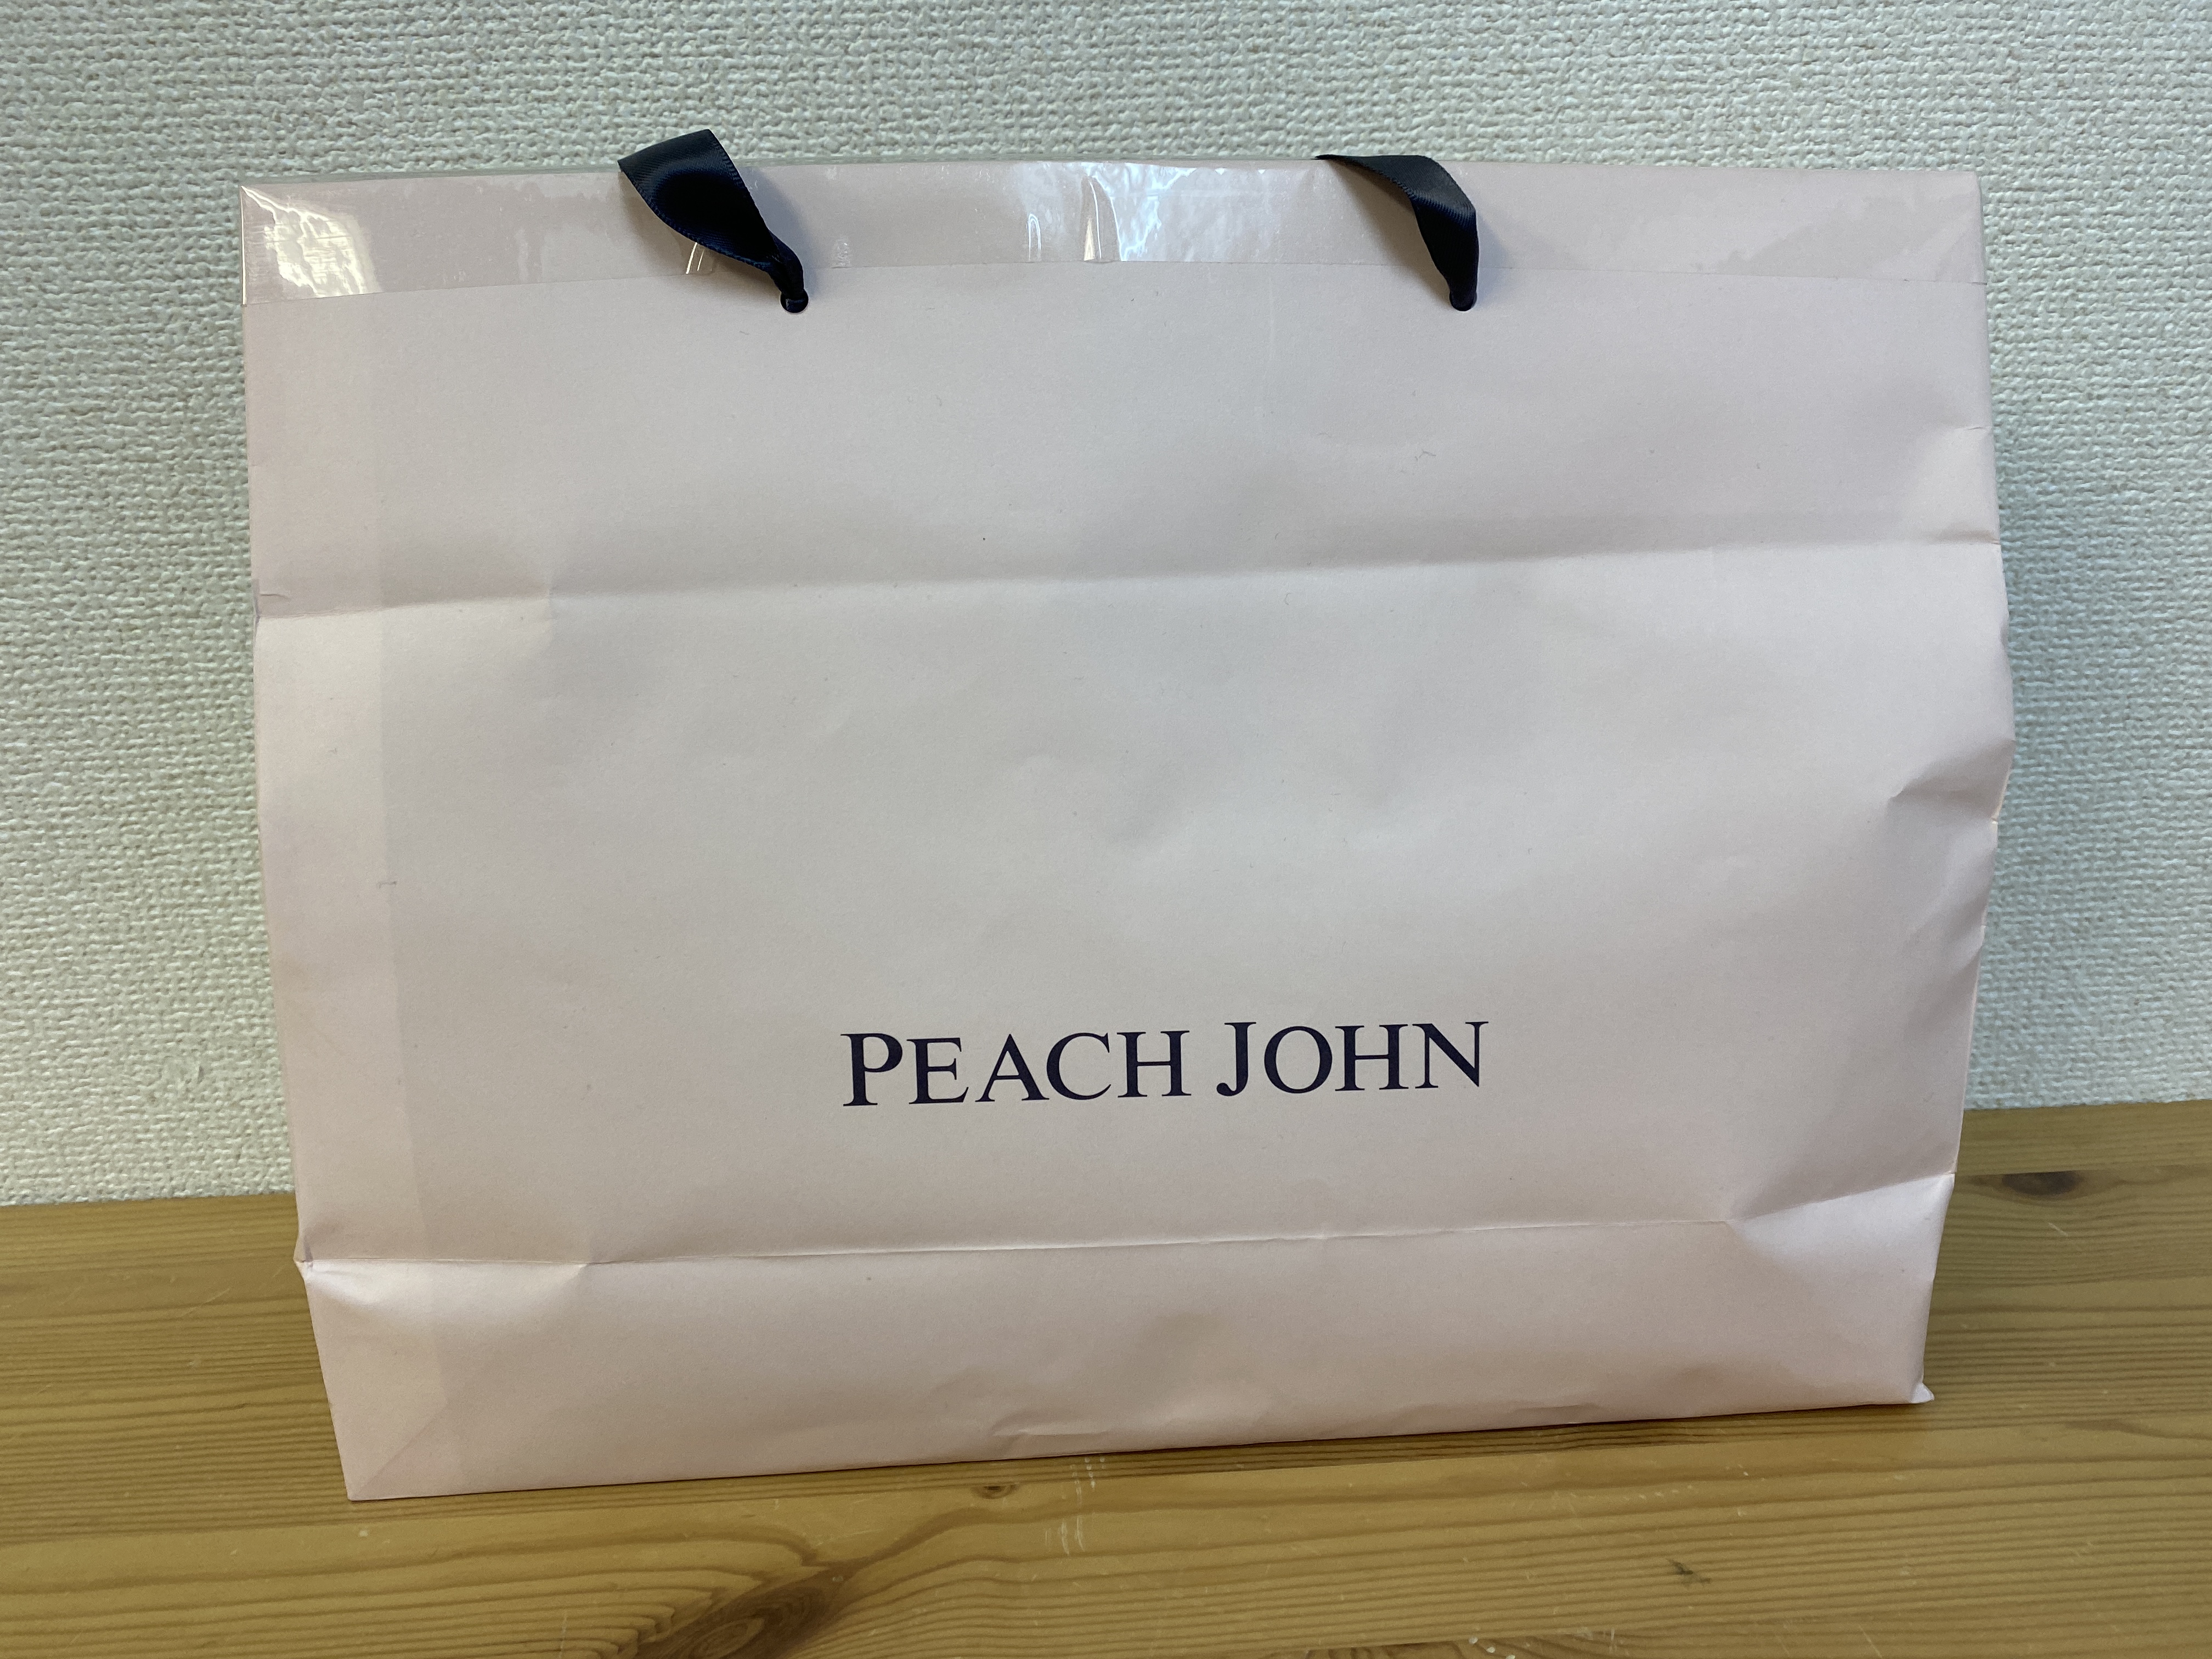 お い Peach John ピーチジョン の福袋に コウモリみたいなパンティー 入ってたぞ 21年福袋 ロケットニュース24